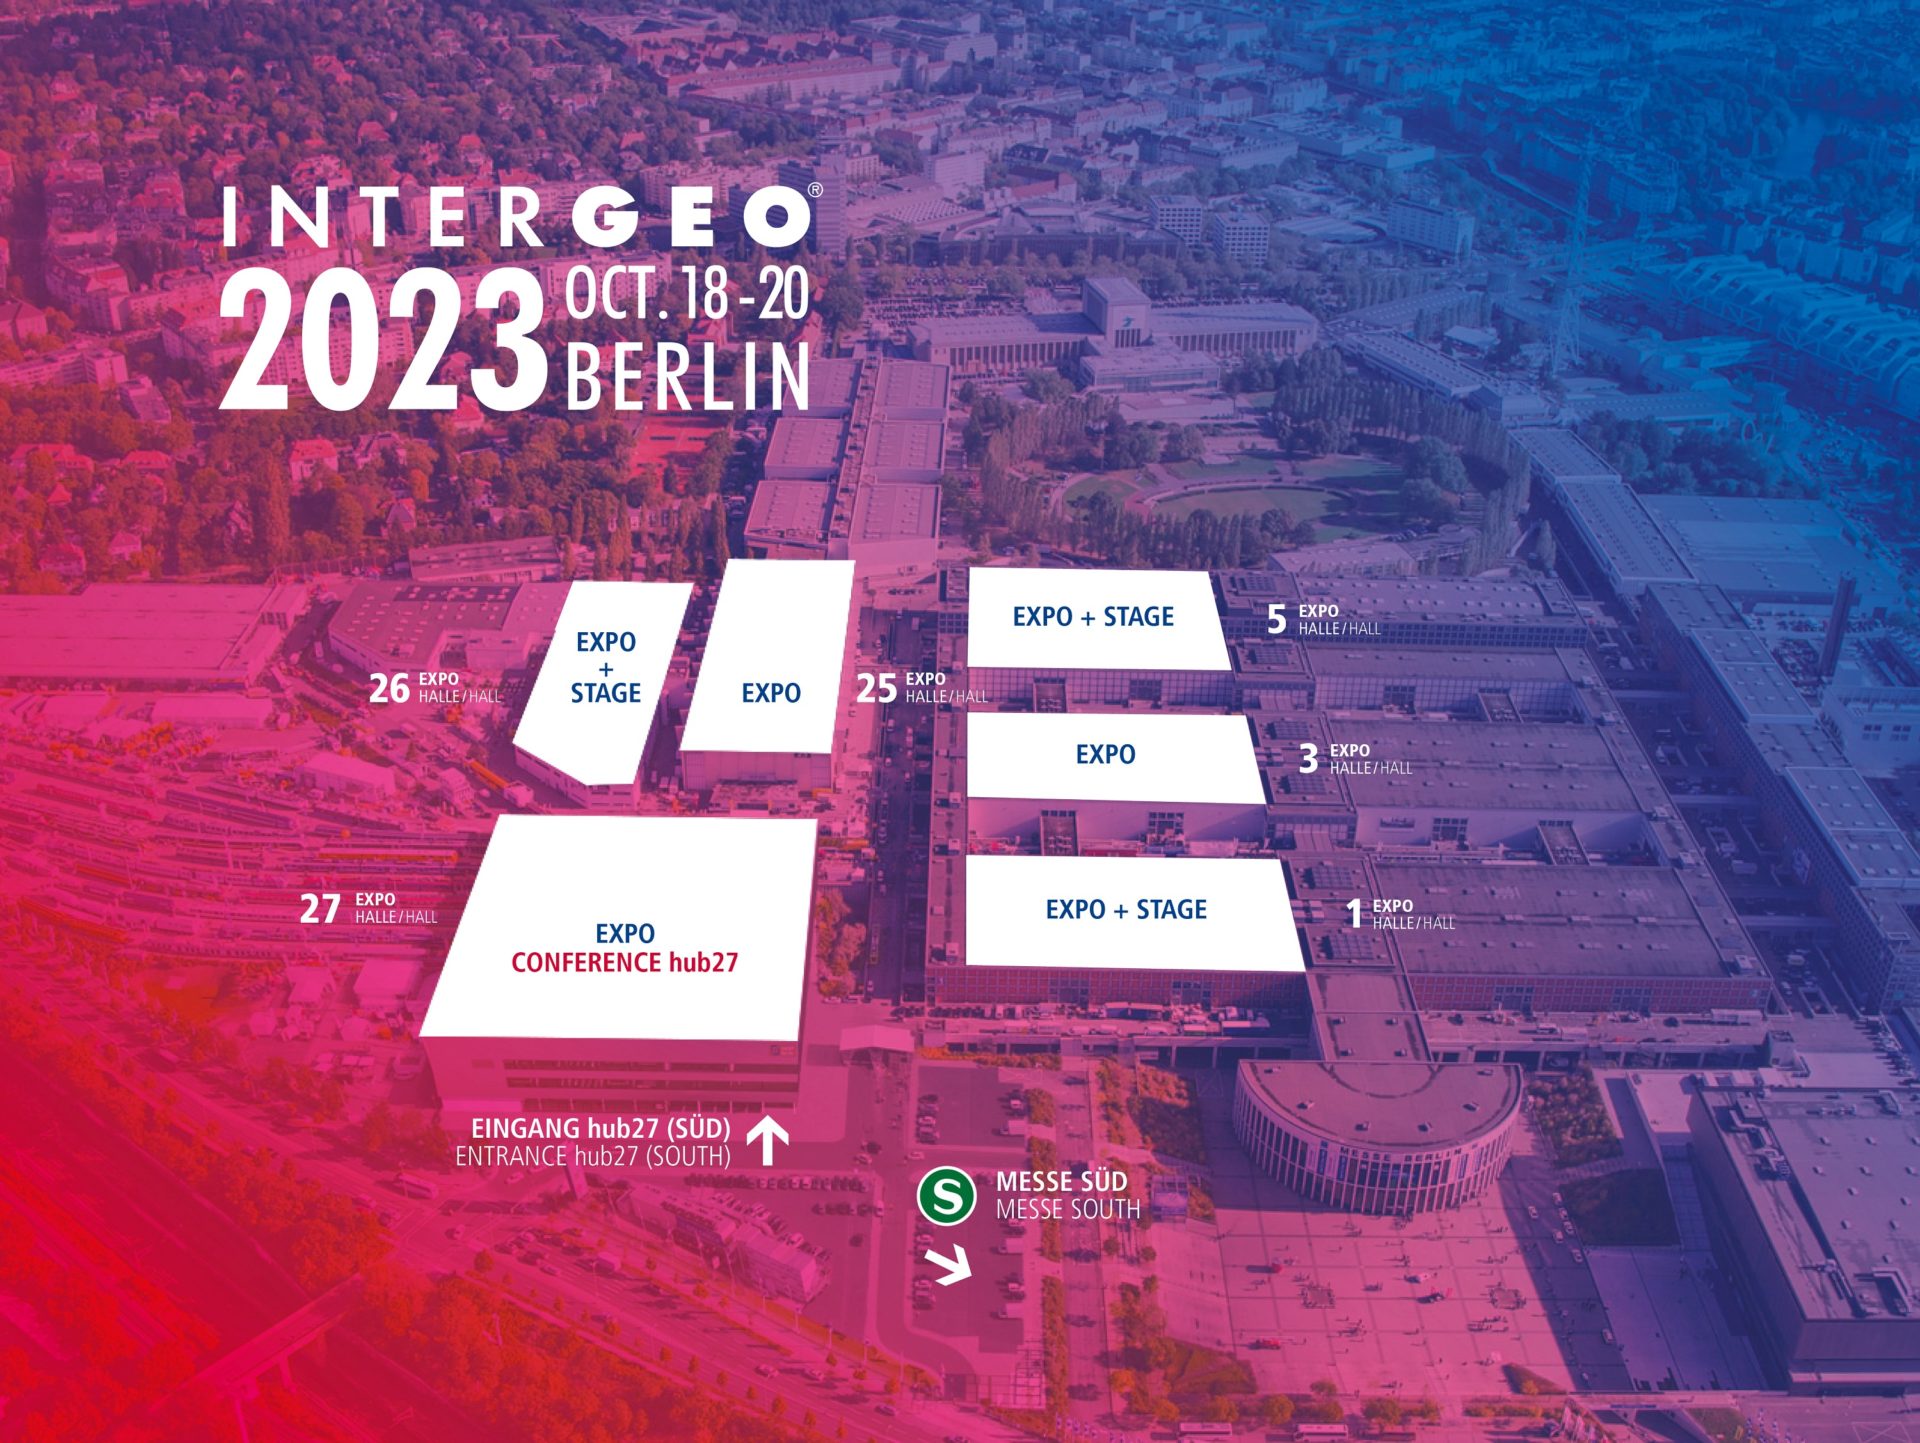 Hallenplan der INTERGEO 2023 in Berlin